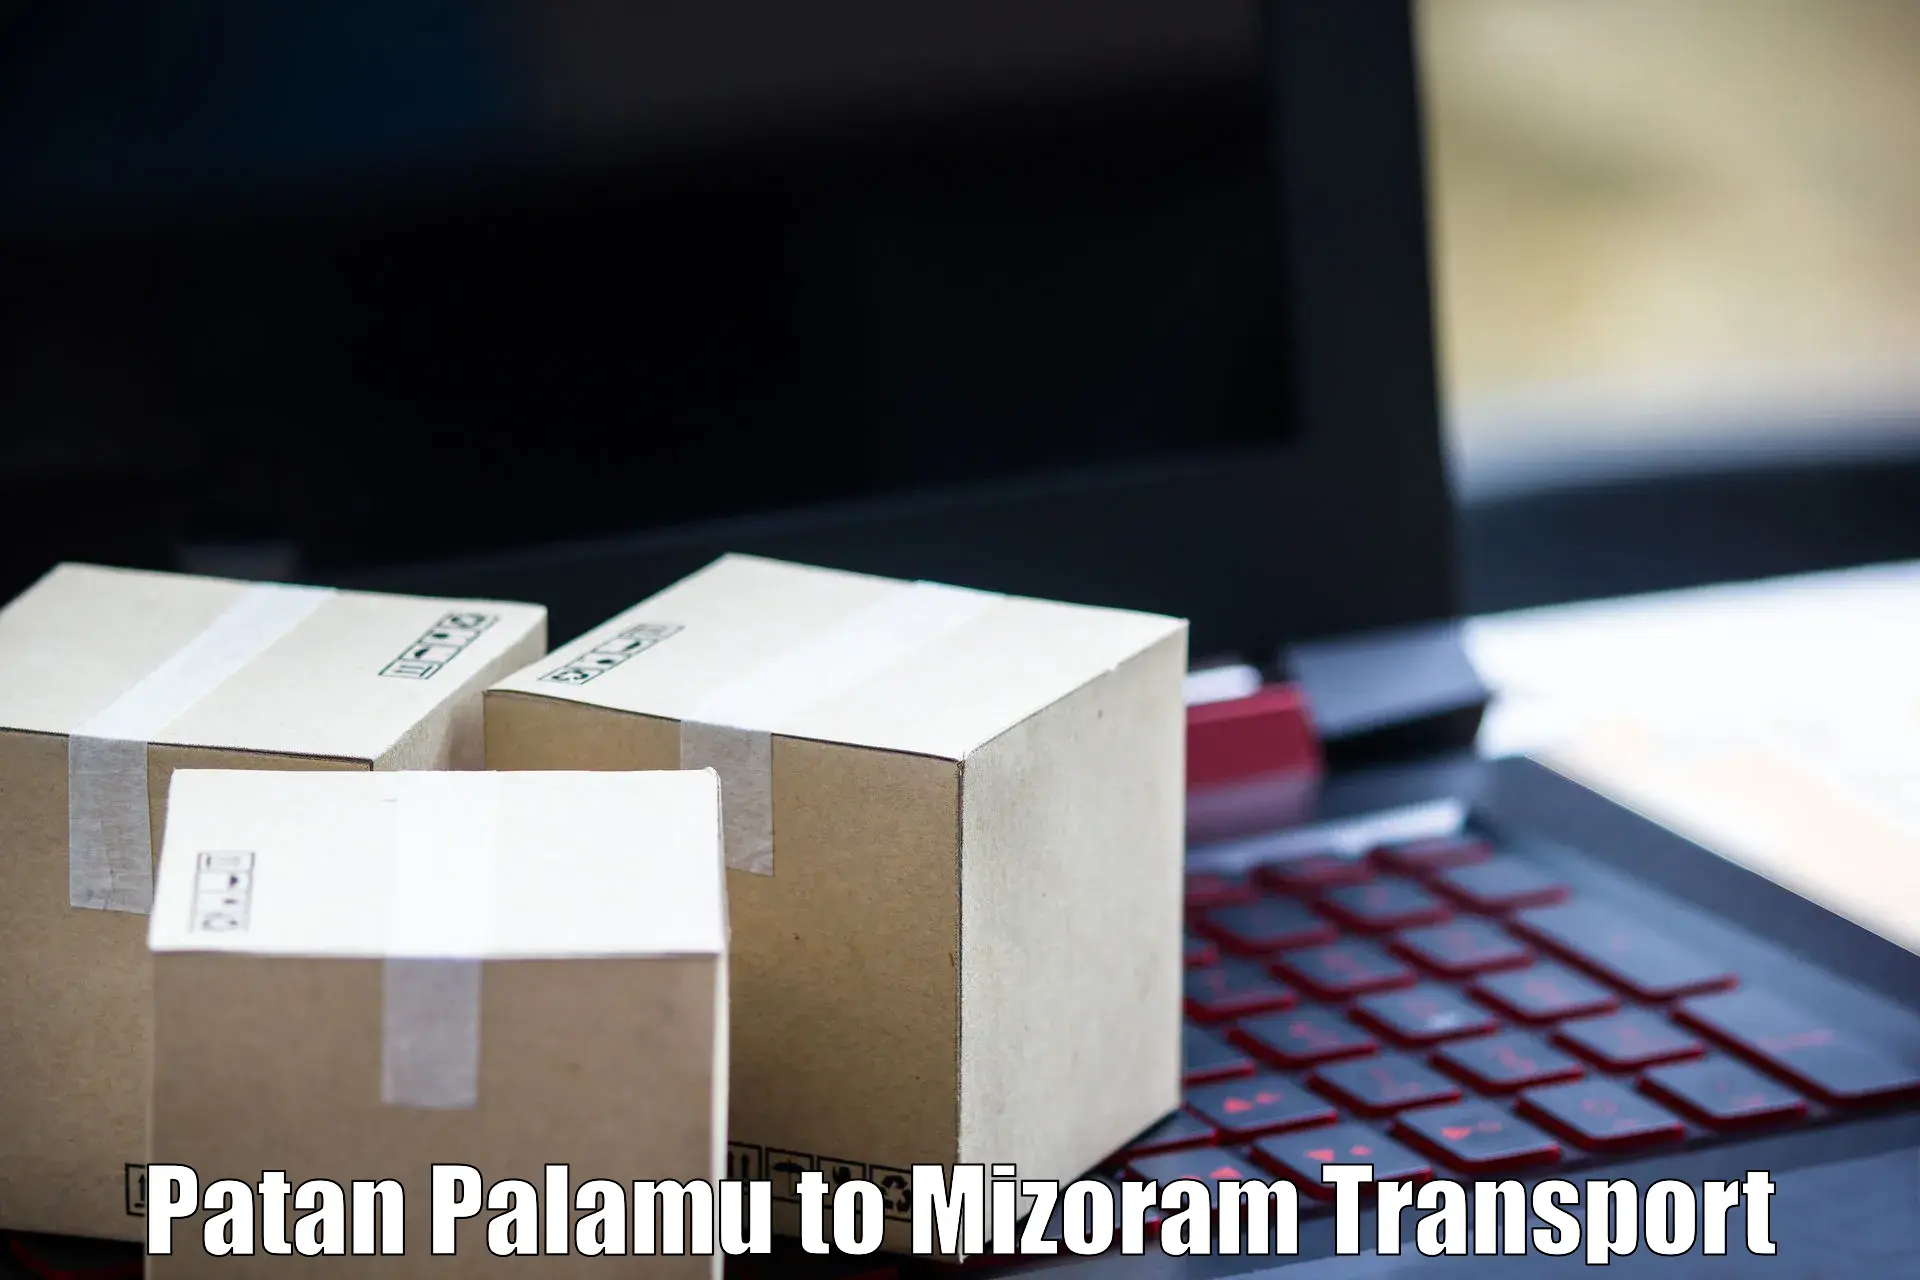 Shipping services Patan Palamu to Darlawn